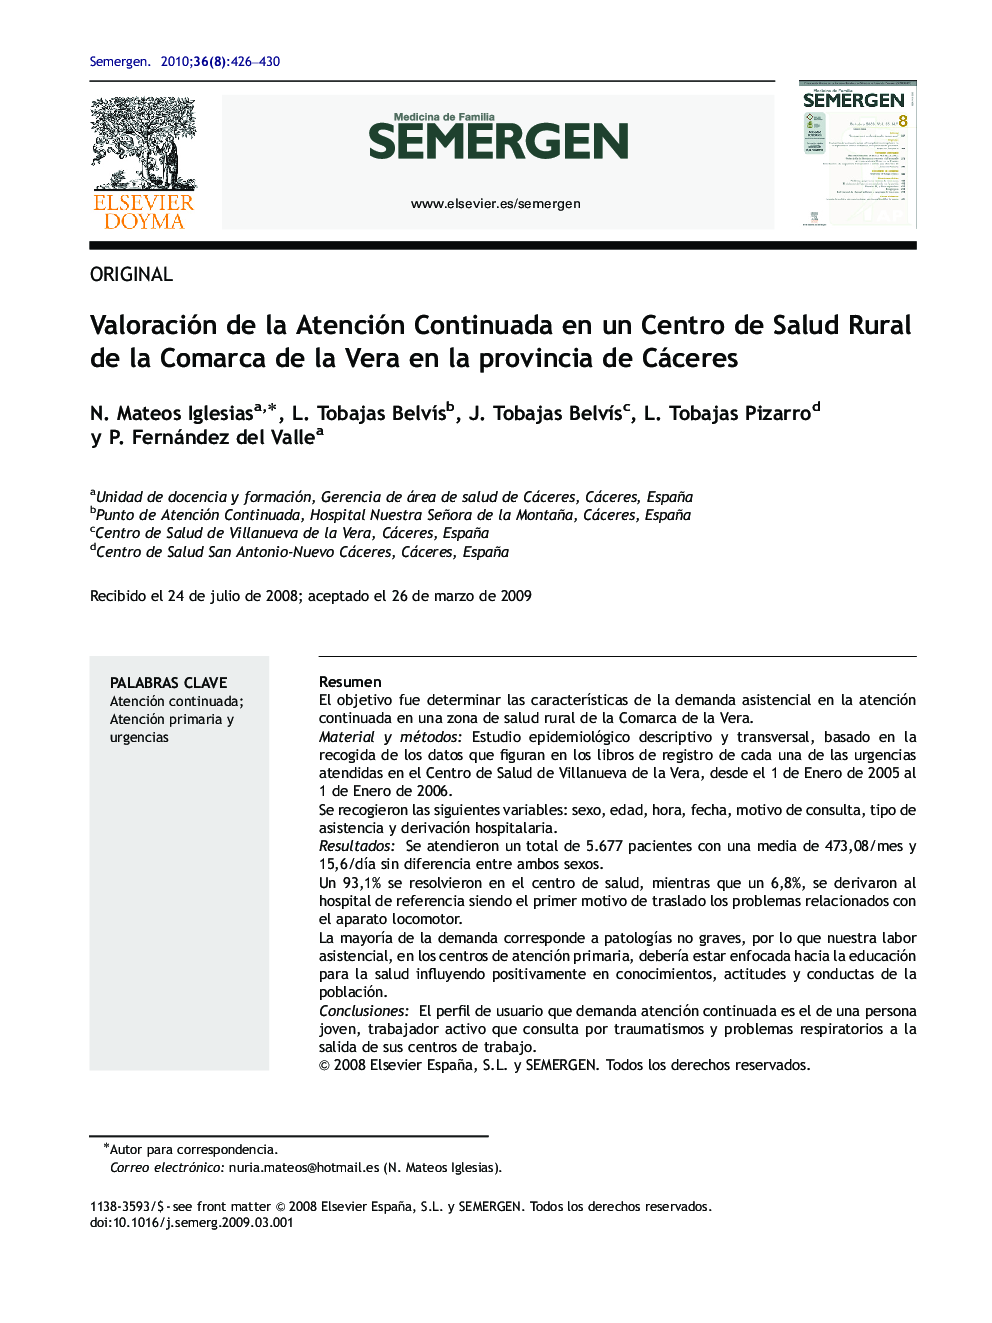 Valoración de la Atención Continuada en un Centro de Salud Rural de la Comarca de la Vera en la provincia de Cáceres